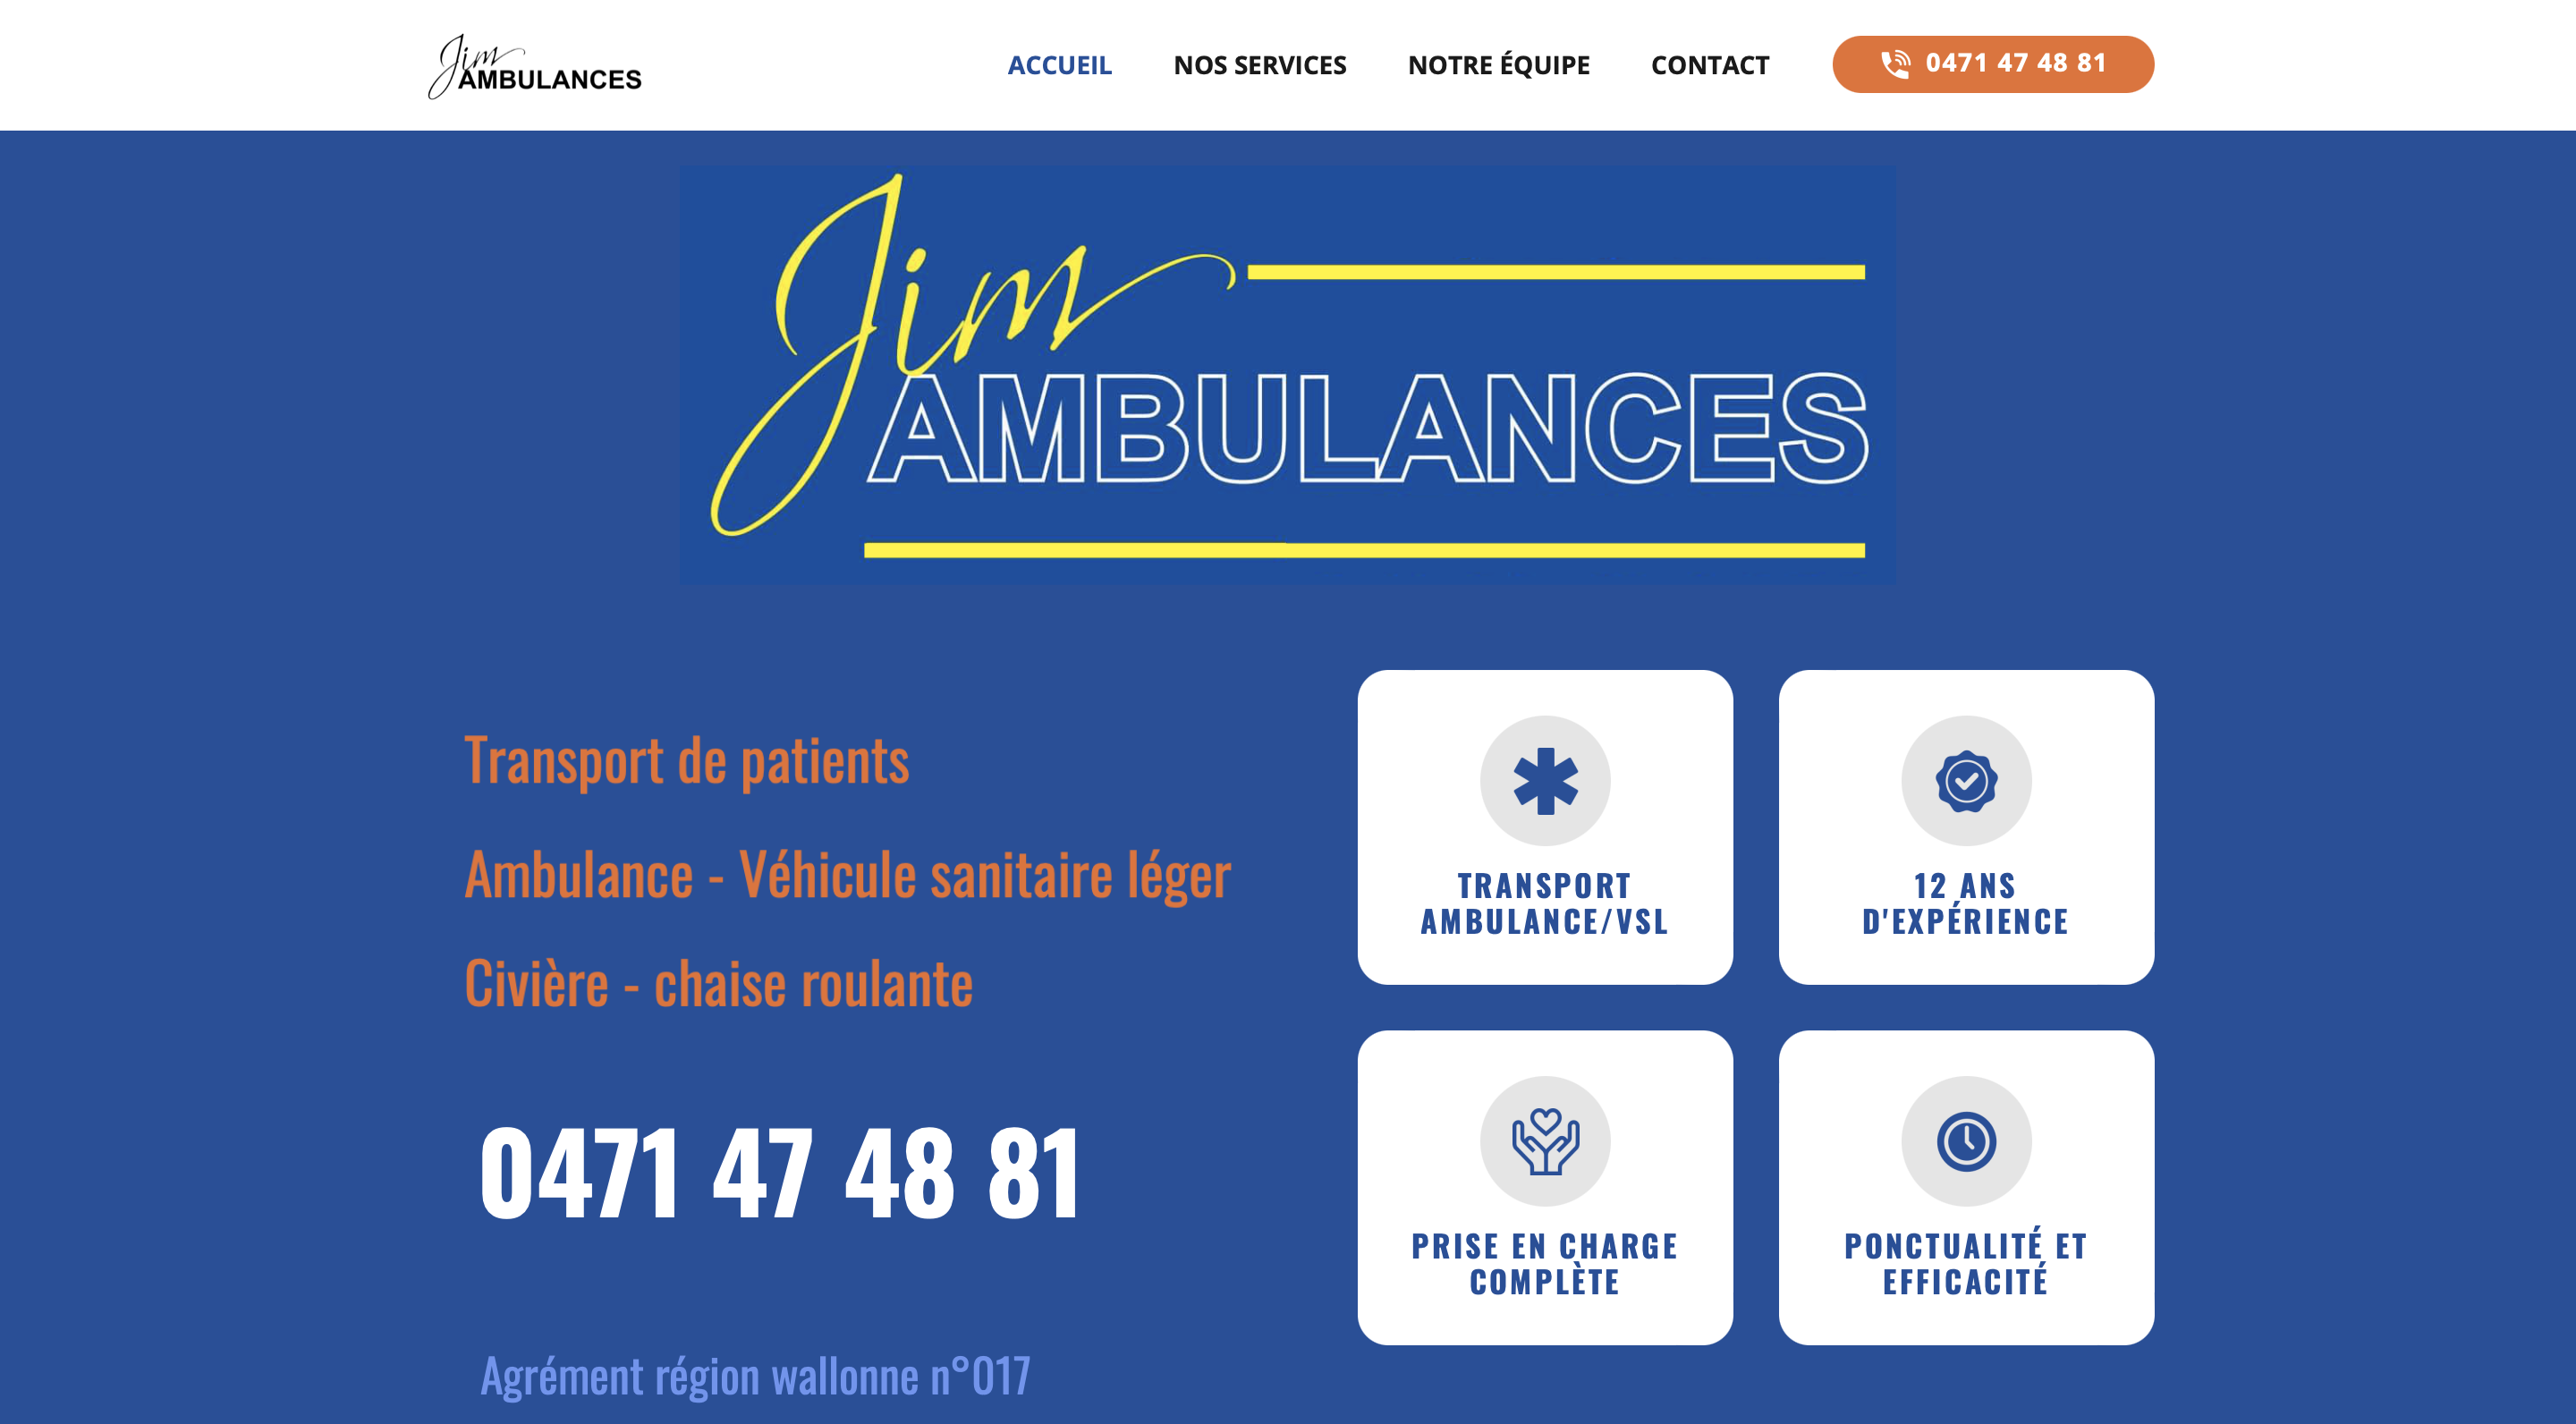 Jim Ambulances